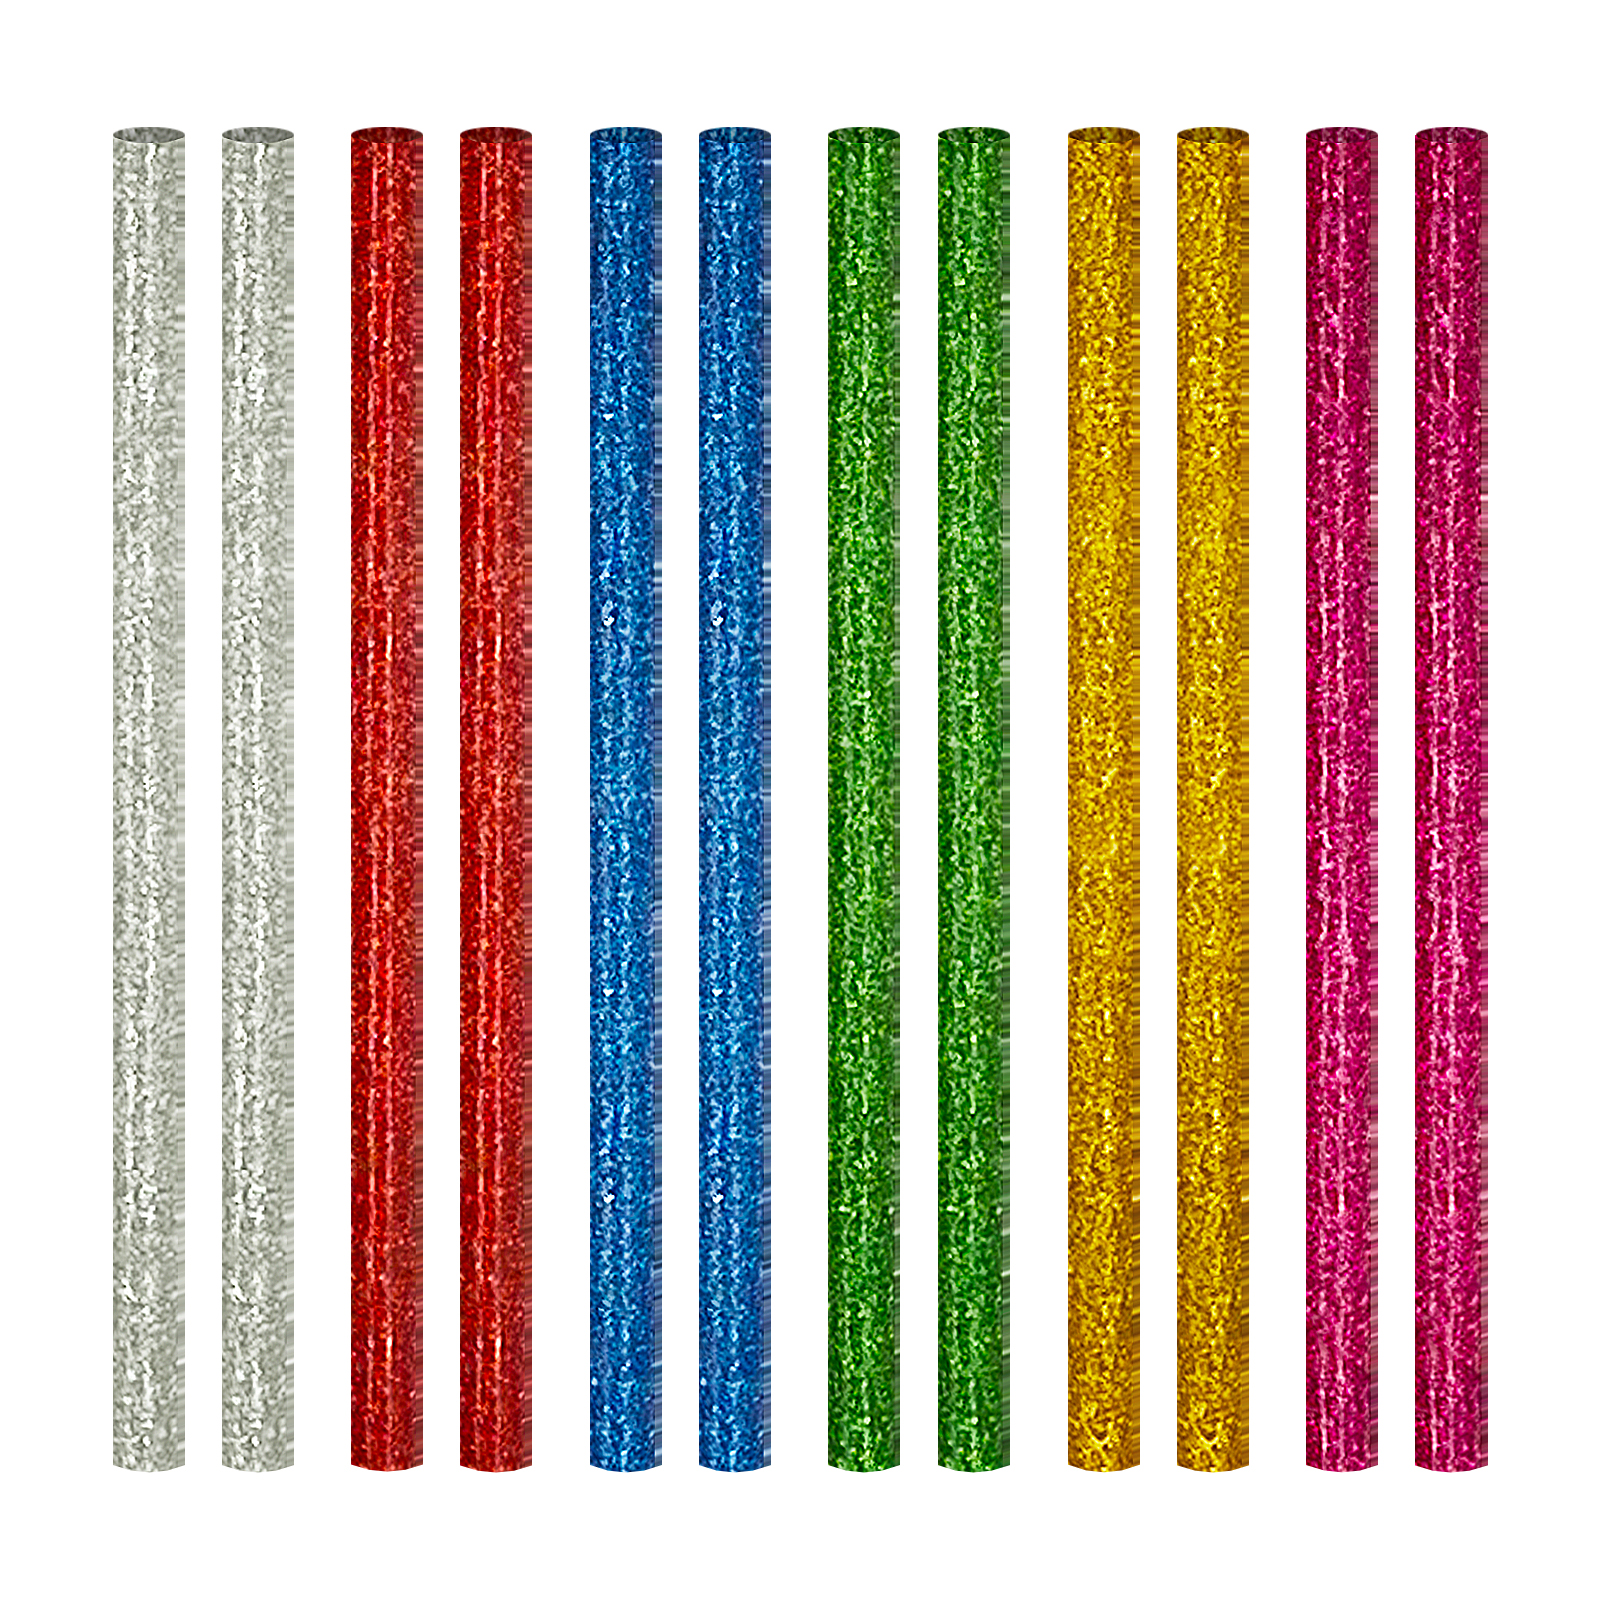 Different Colors Glitter Glue Sticks) Non toxic Washable - Temu Austria